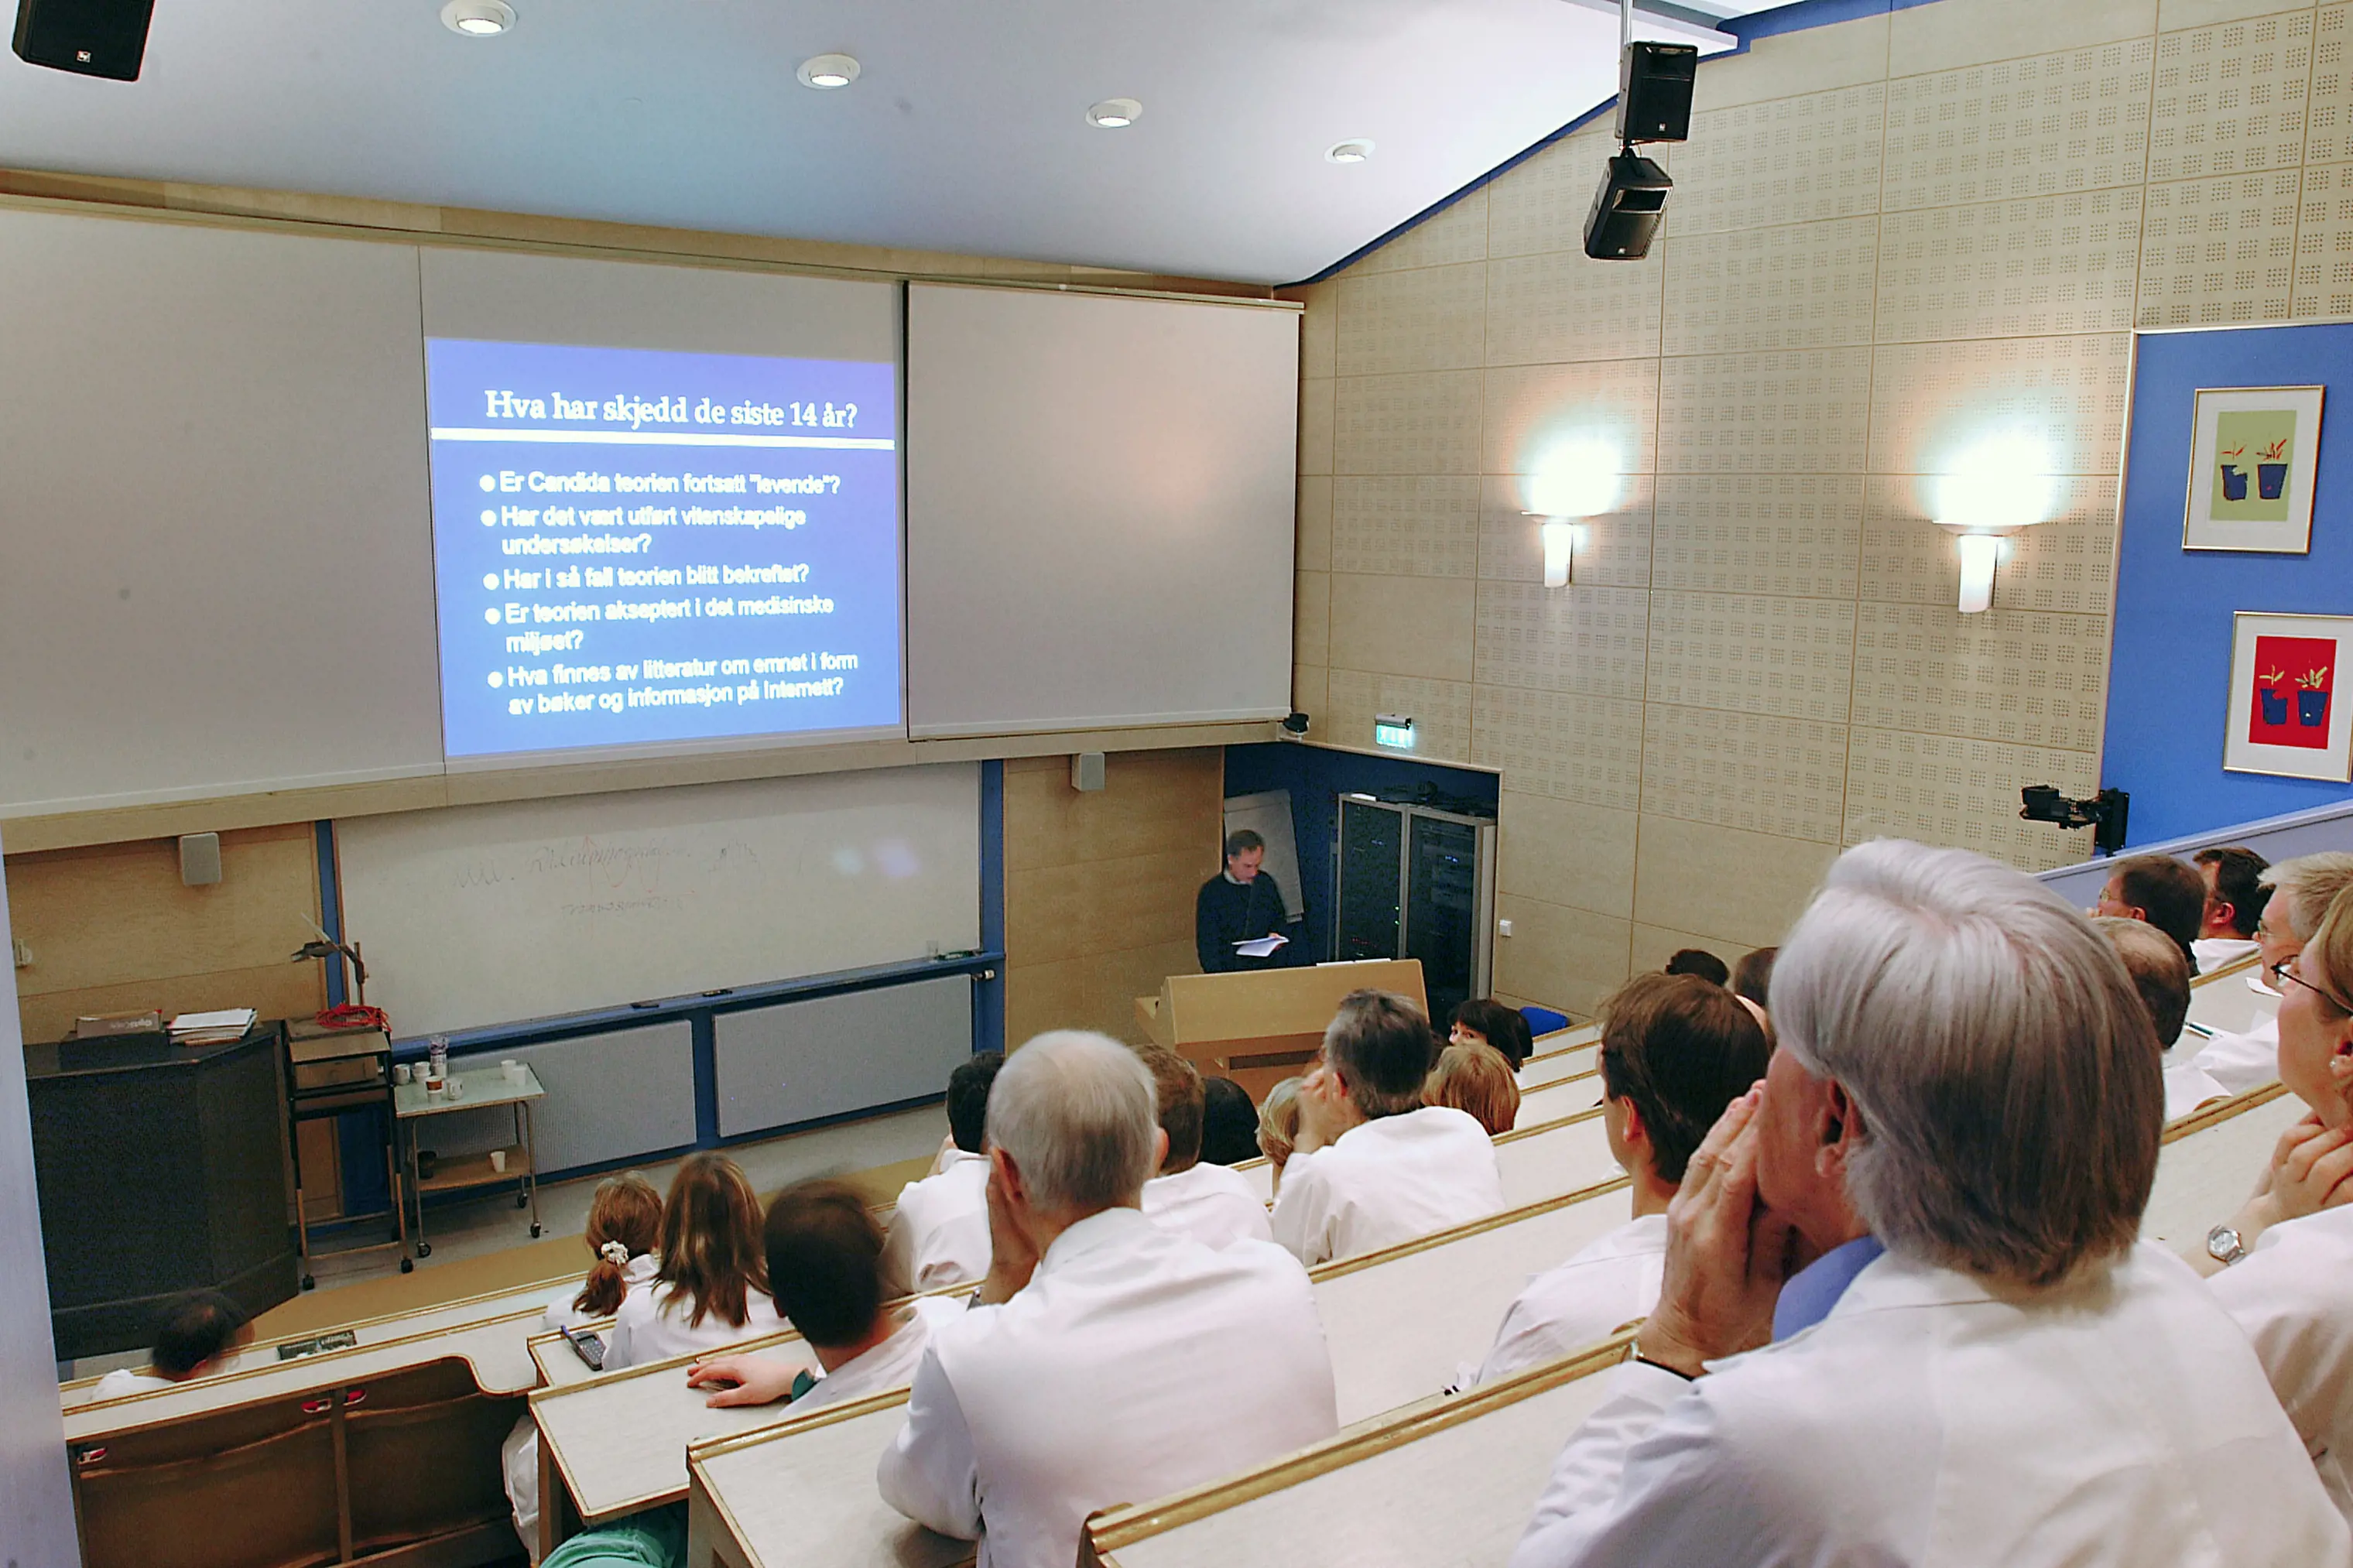 En gruppe mennesker i hvite frakker følger en forelesning i et  auditorium